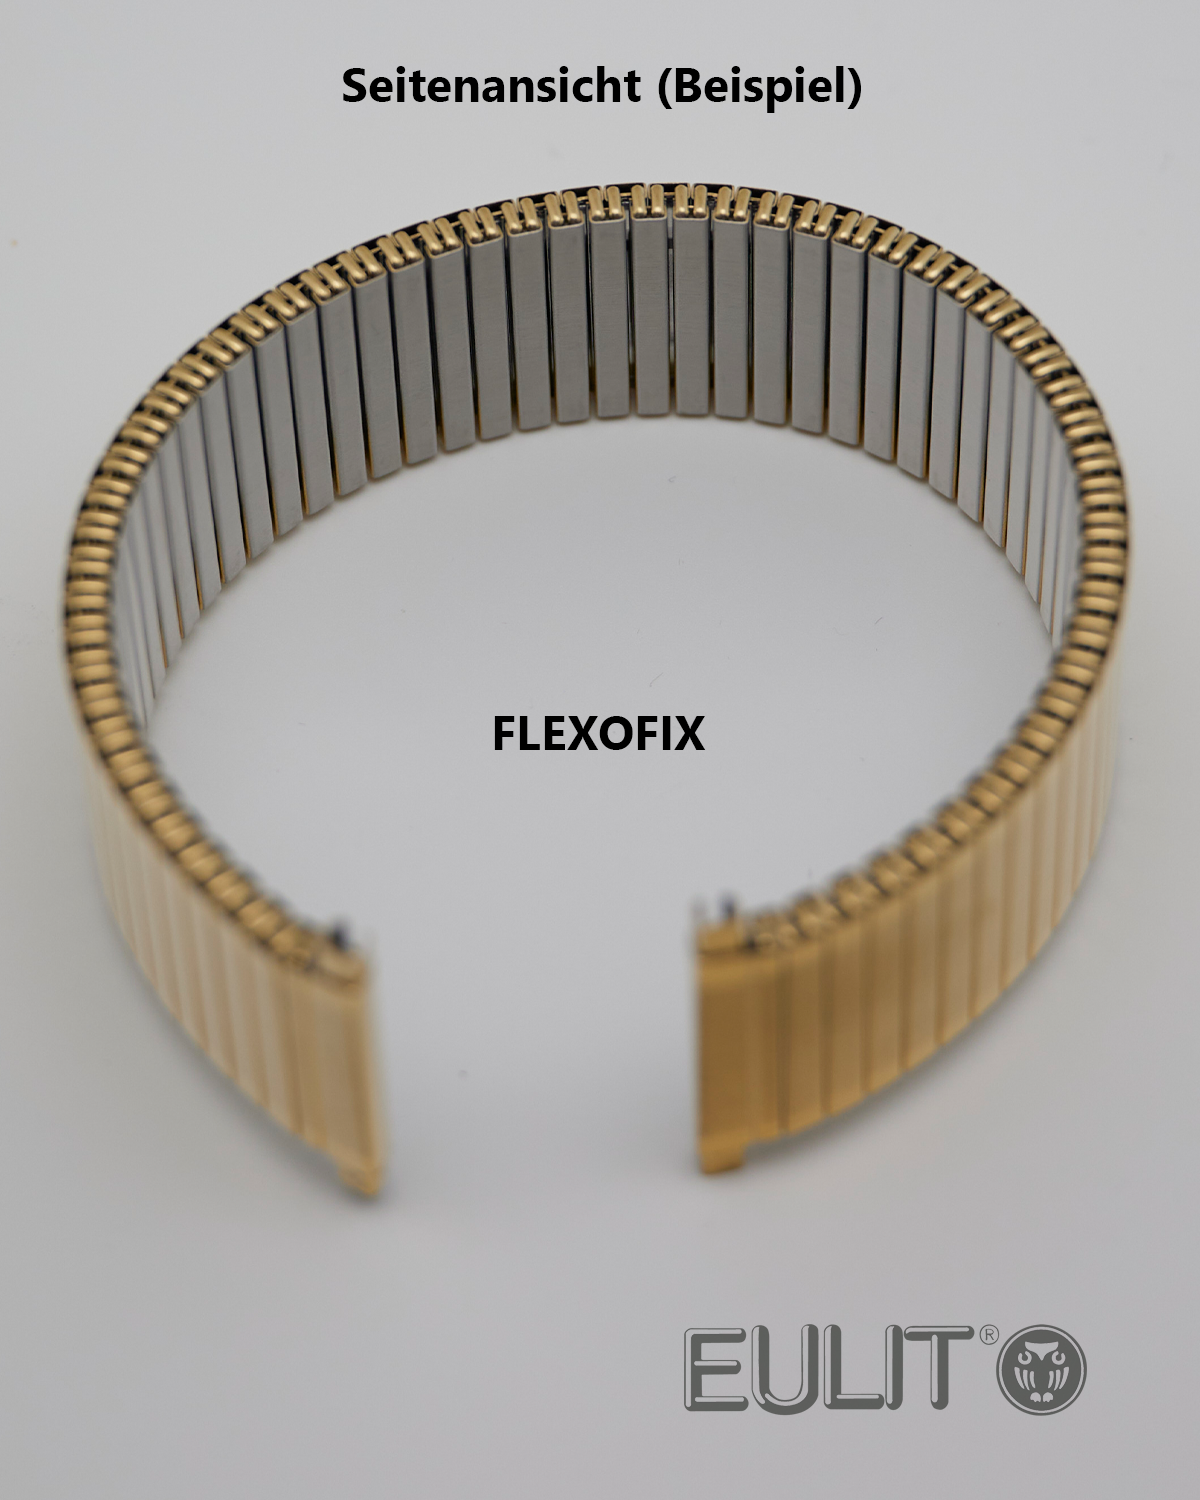 76-415004 EULIT FLEXOFIX 18-20 mm vergoldet